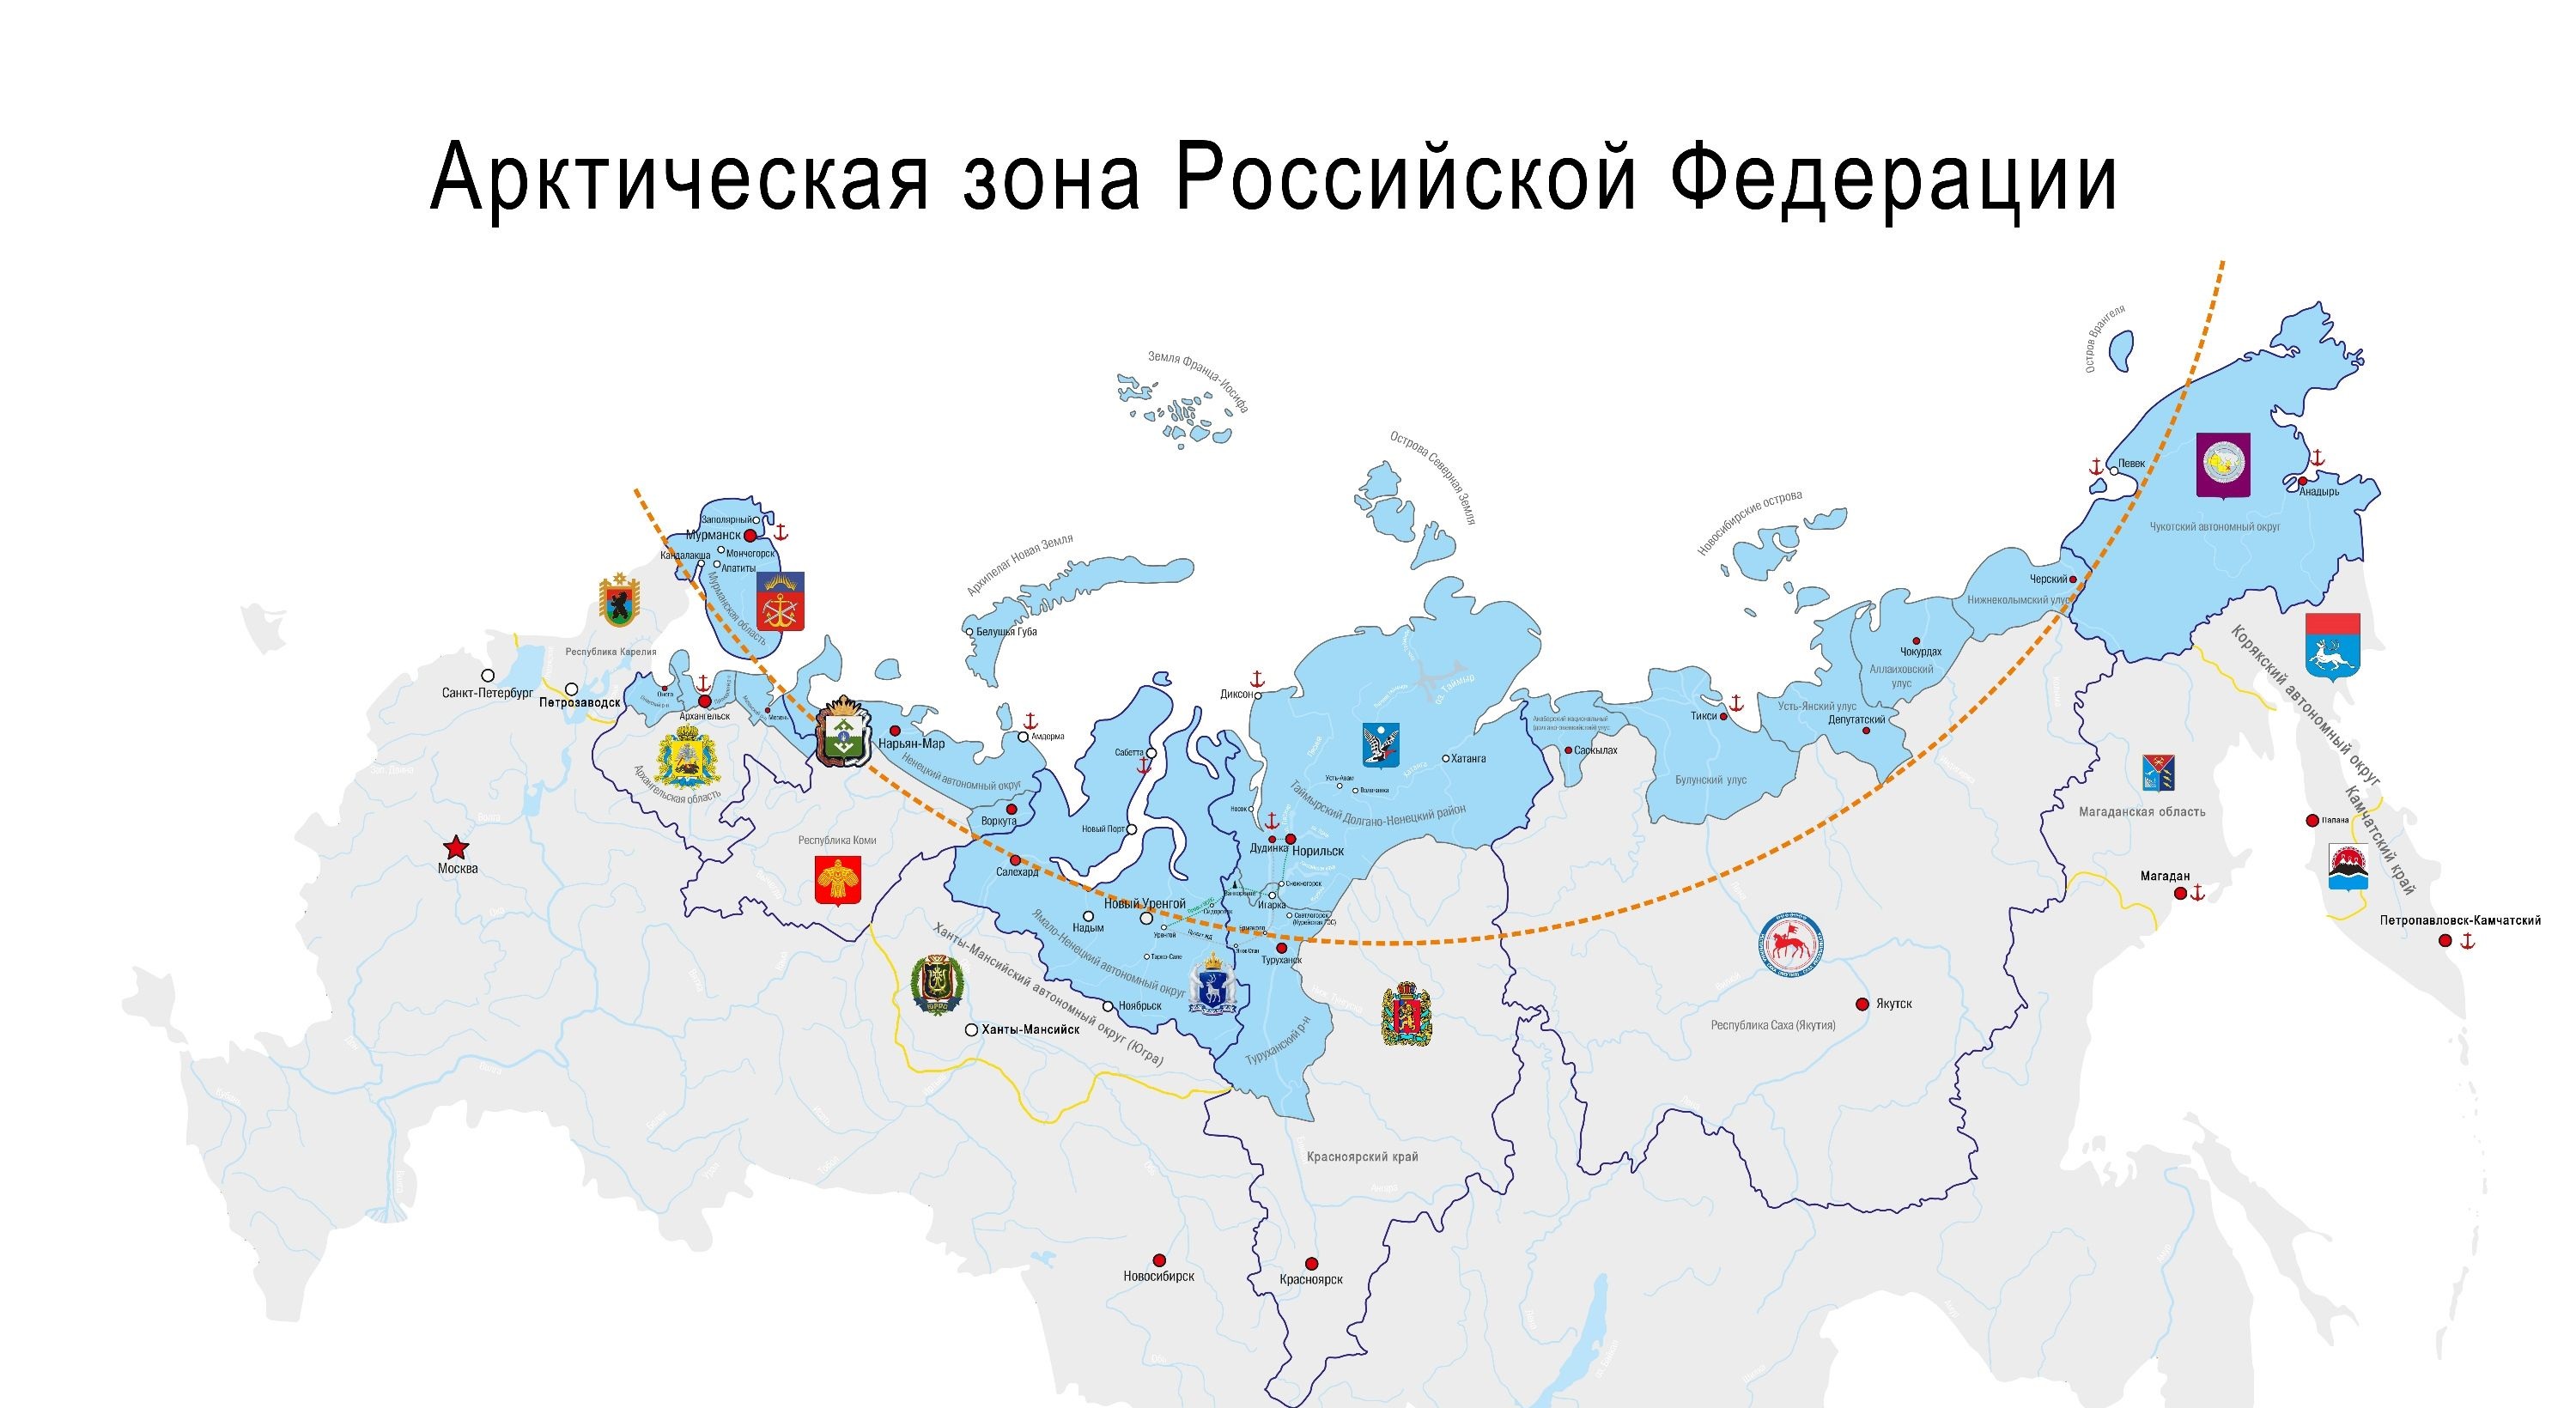 Два района Архангельской области вошли в состав Арктической зоны России